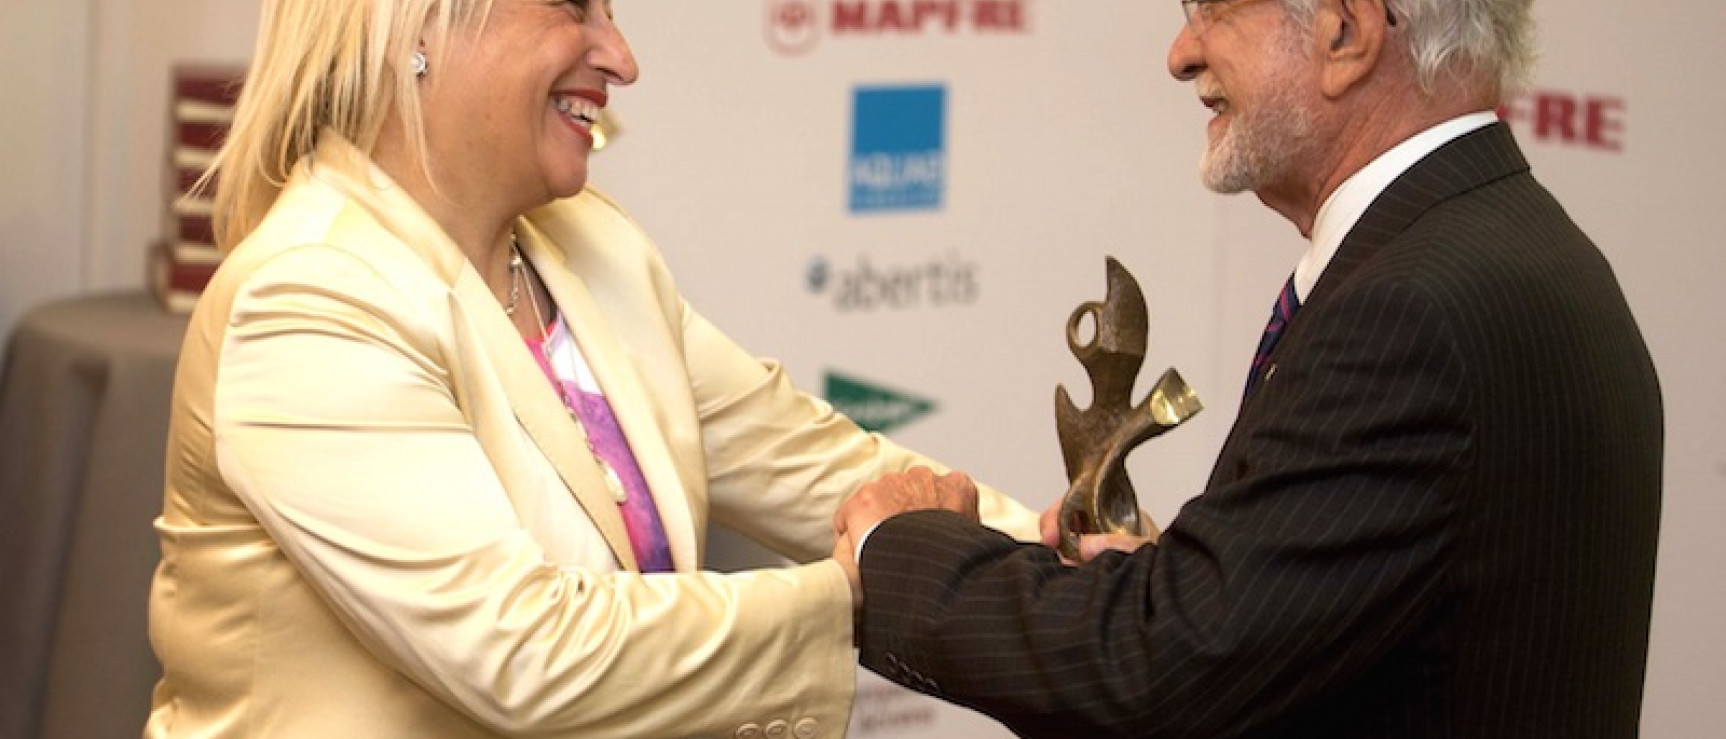 José María Merino recoge el premio en nombre de la RAE.